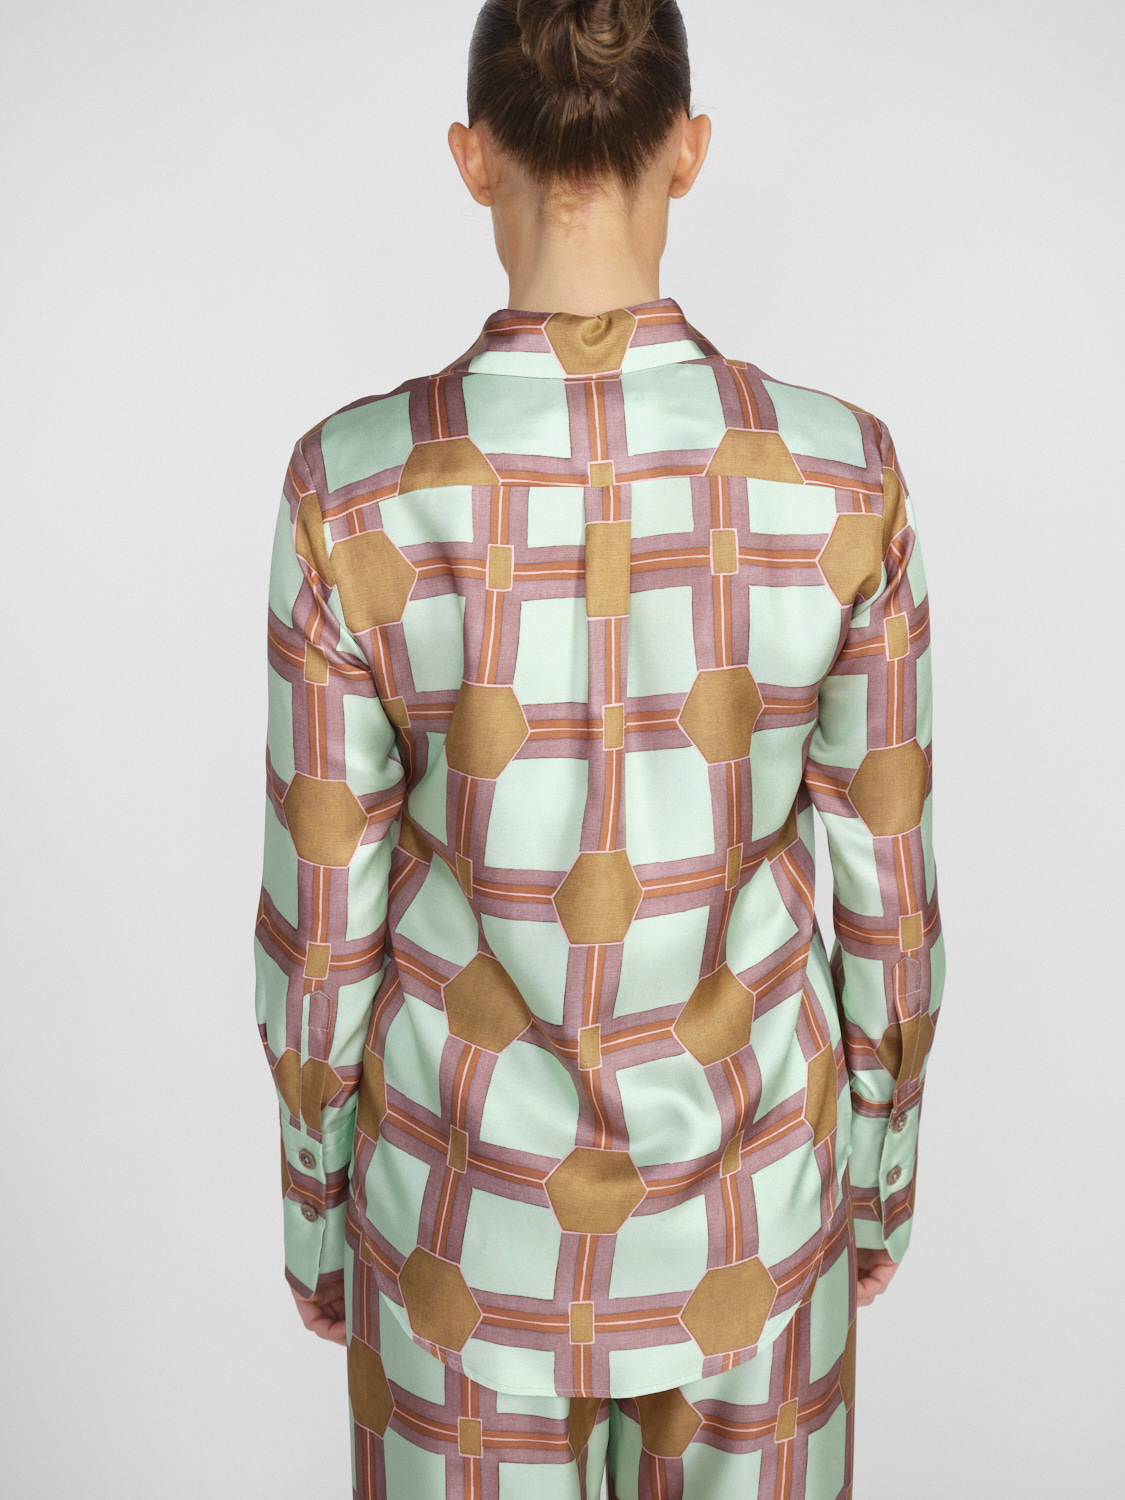 Odeeh Seidencrêpe-Bluse mit graphischem Muster   mehrfarbig 40